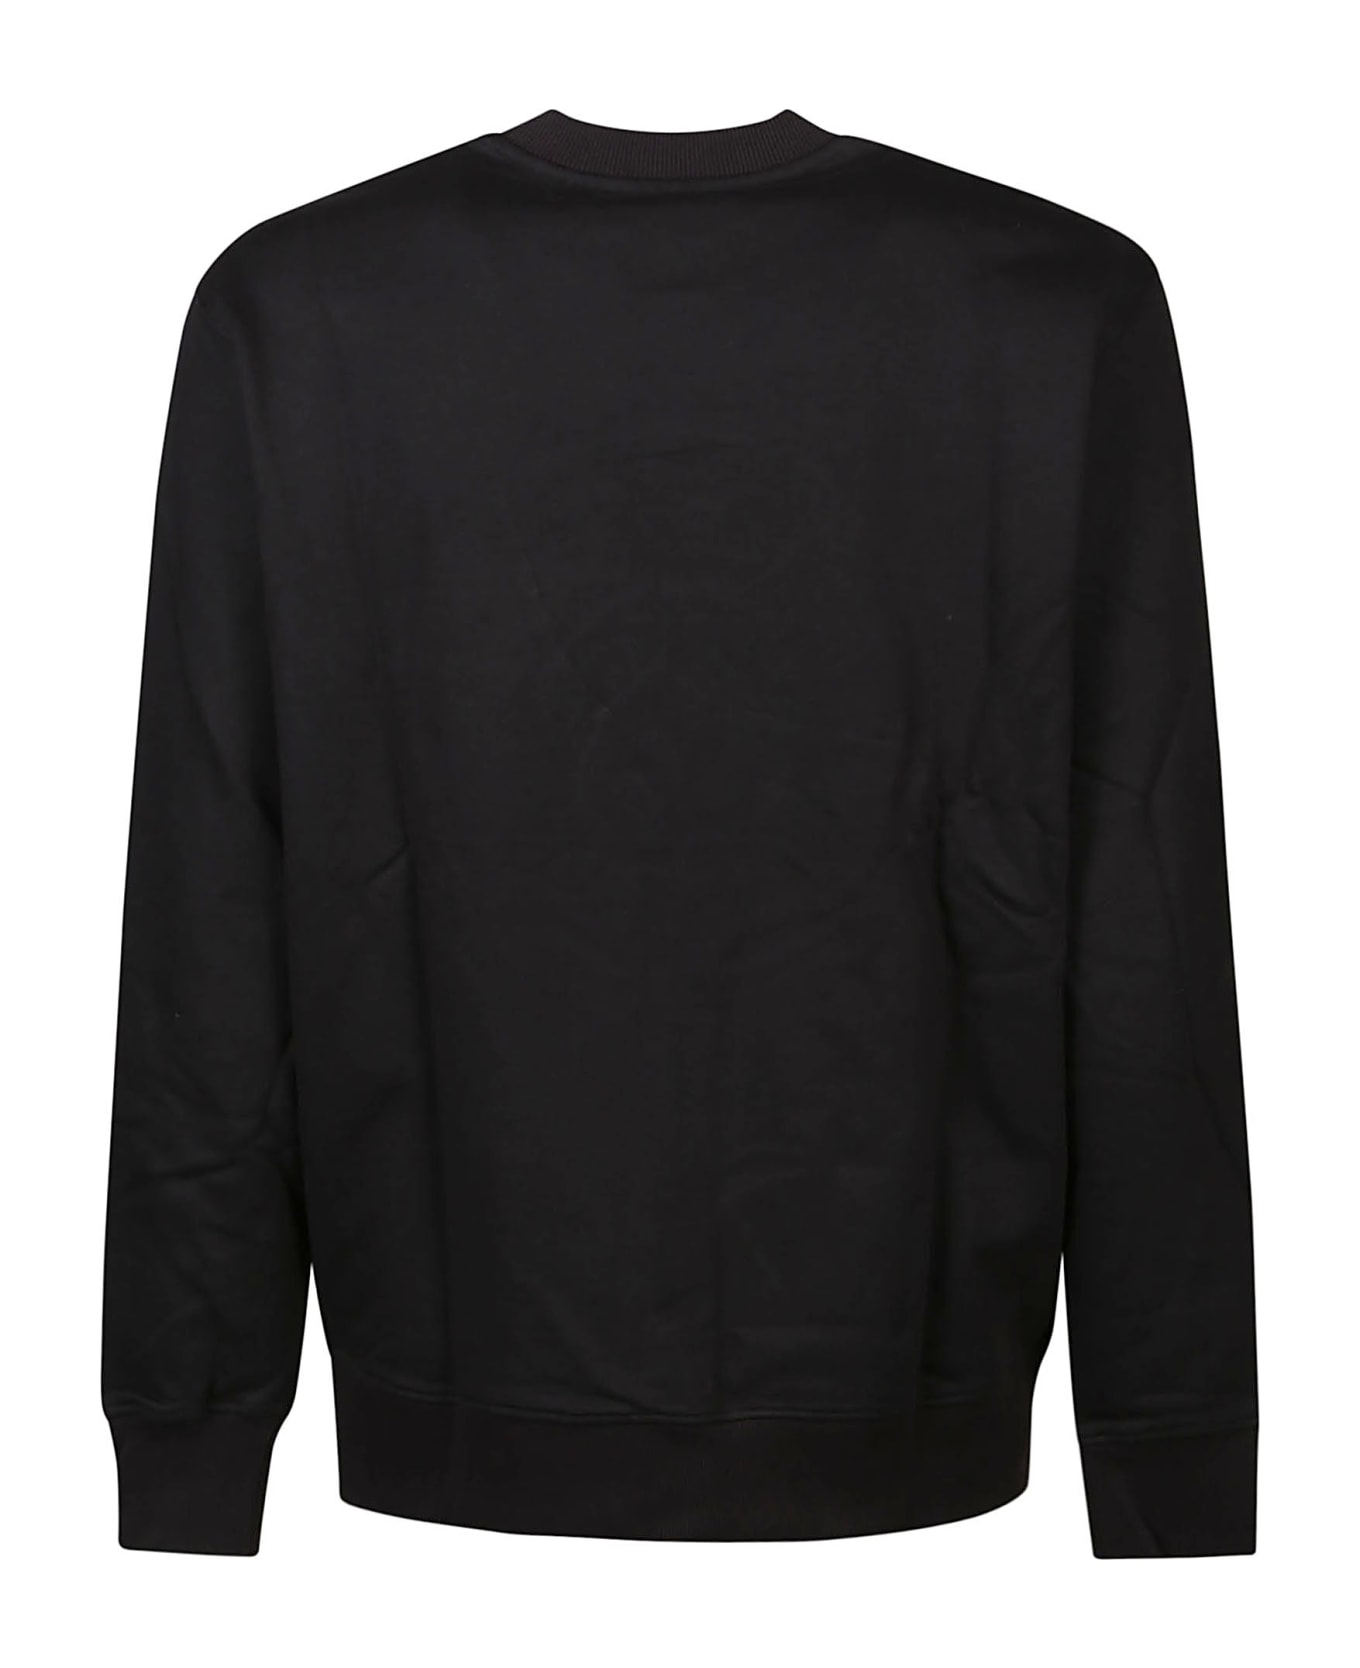 Versace Jeans Couture V-emblem Sweatshirt - Black/gold フリース